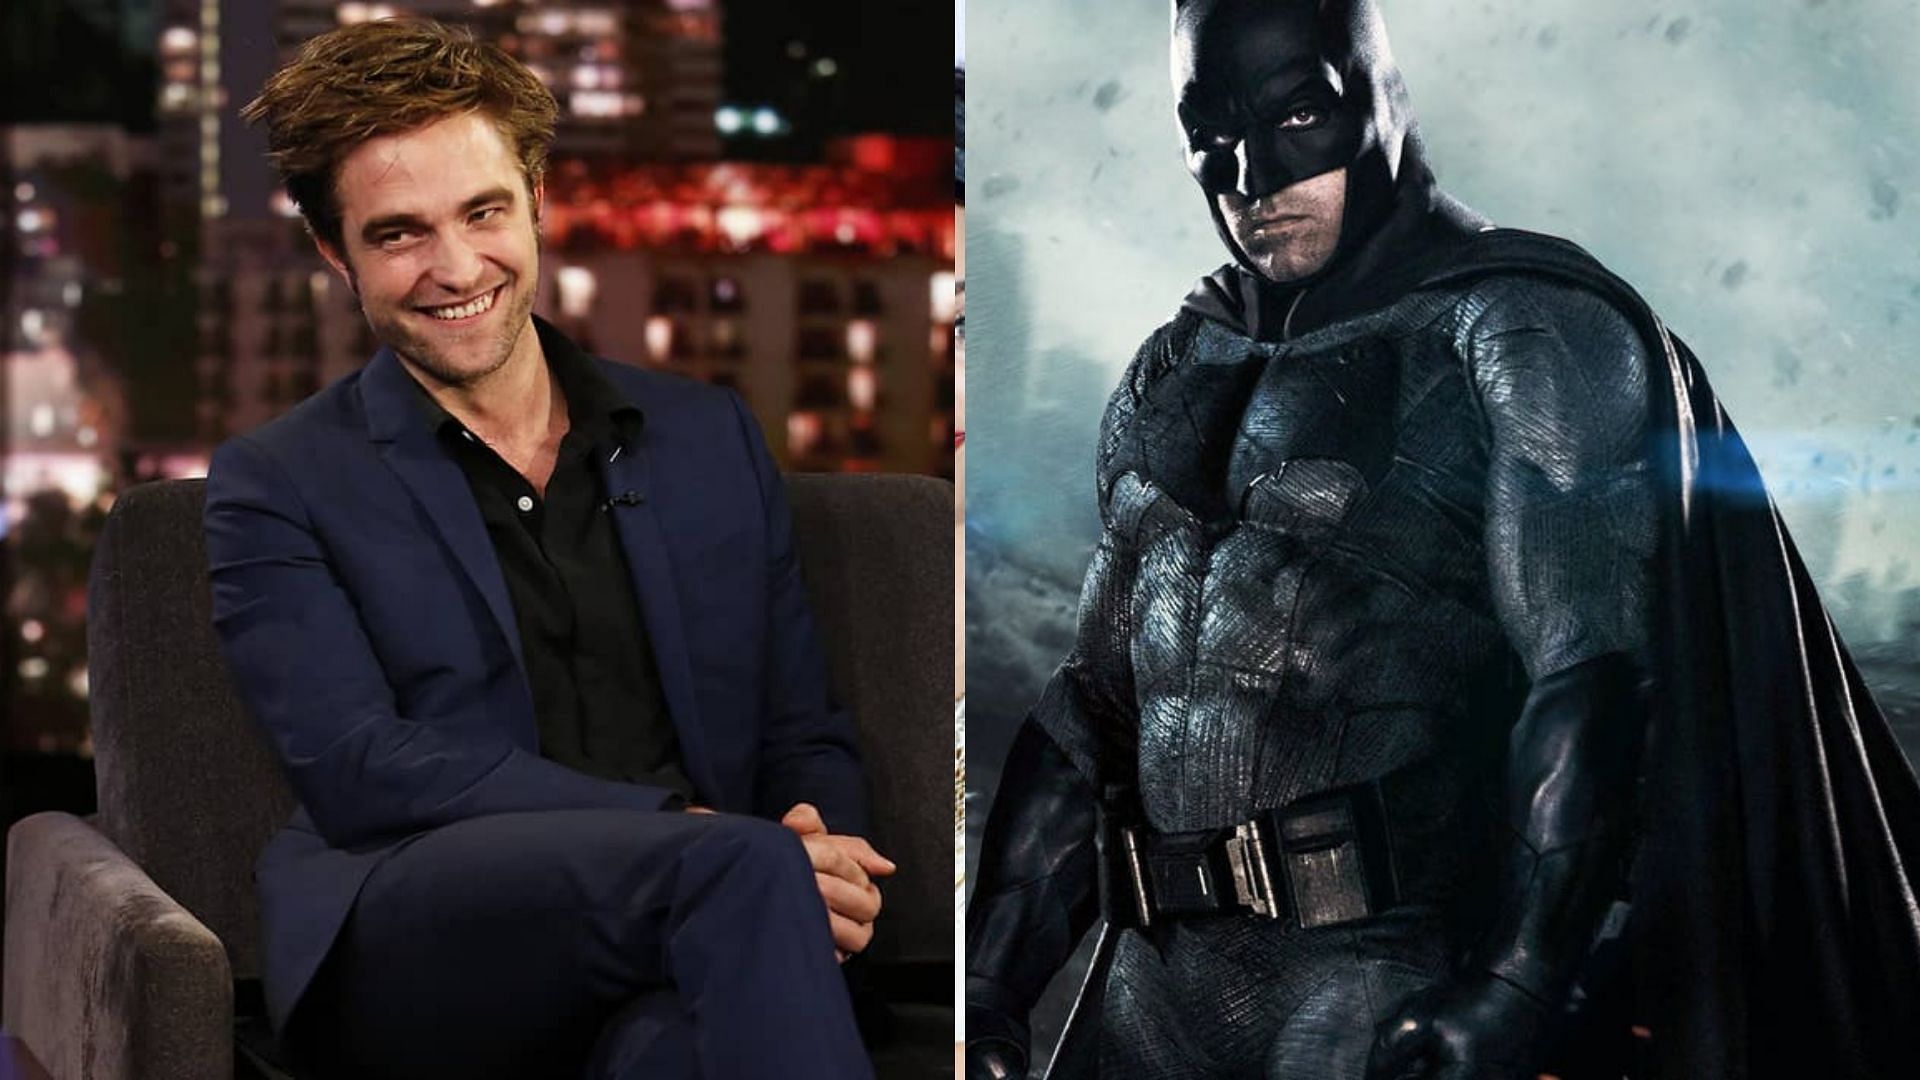 Robert Pattinson is set to replace Ben Affleck as Batman.